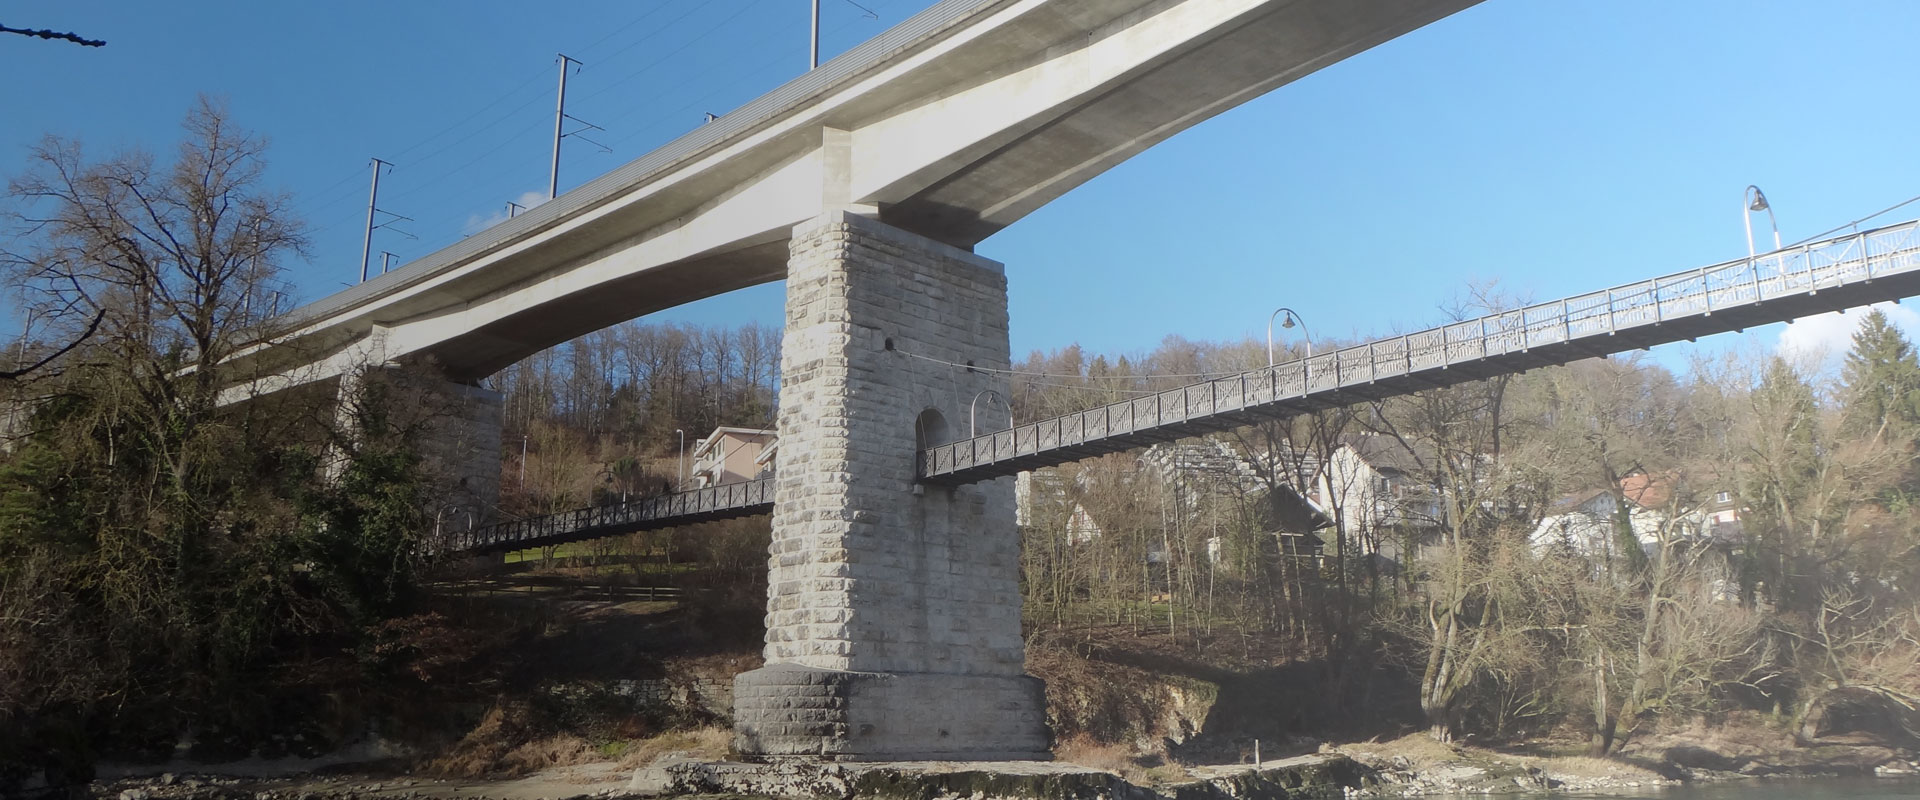 20-jähriges Jubiläum der Eisenbahnbrücke Brugg